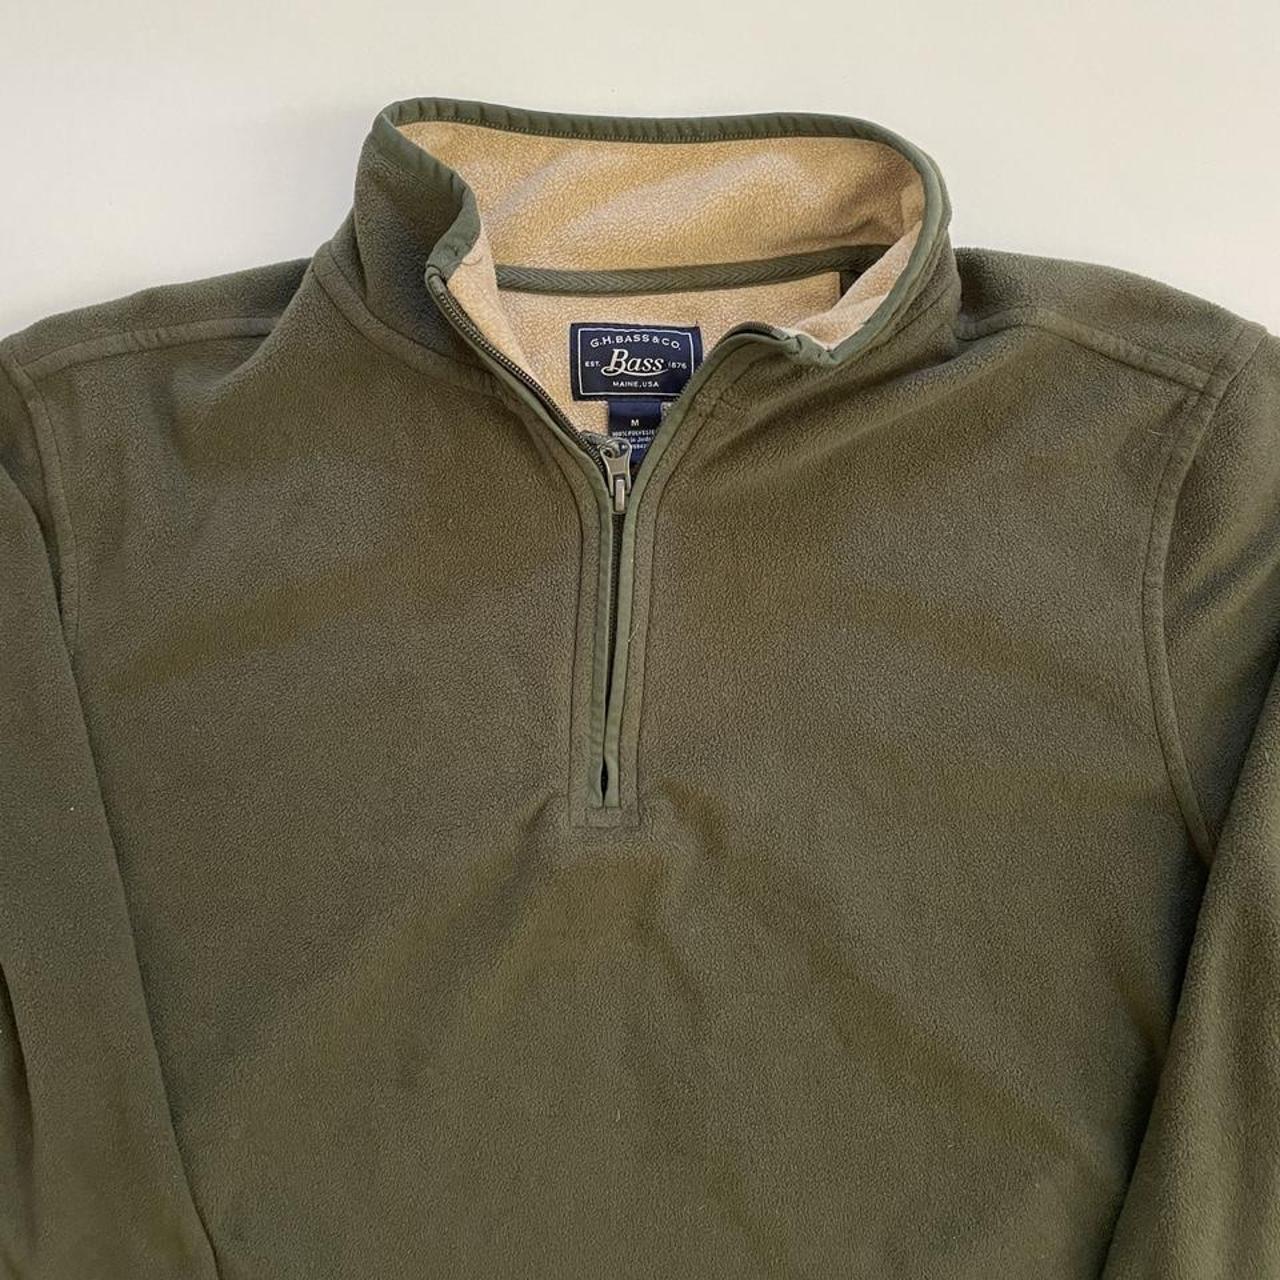 Vintage Olive Green Half Zip Fleece Sweater - Depop